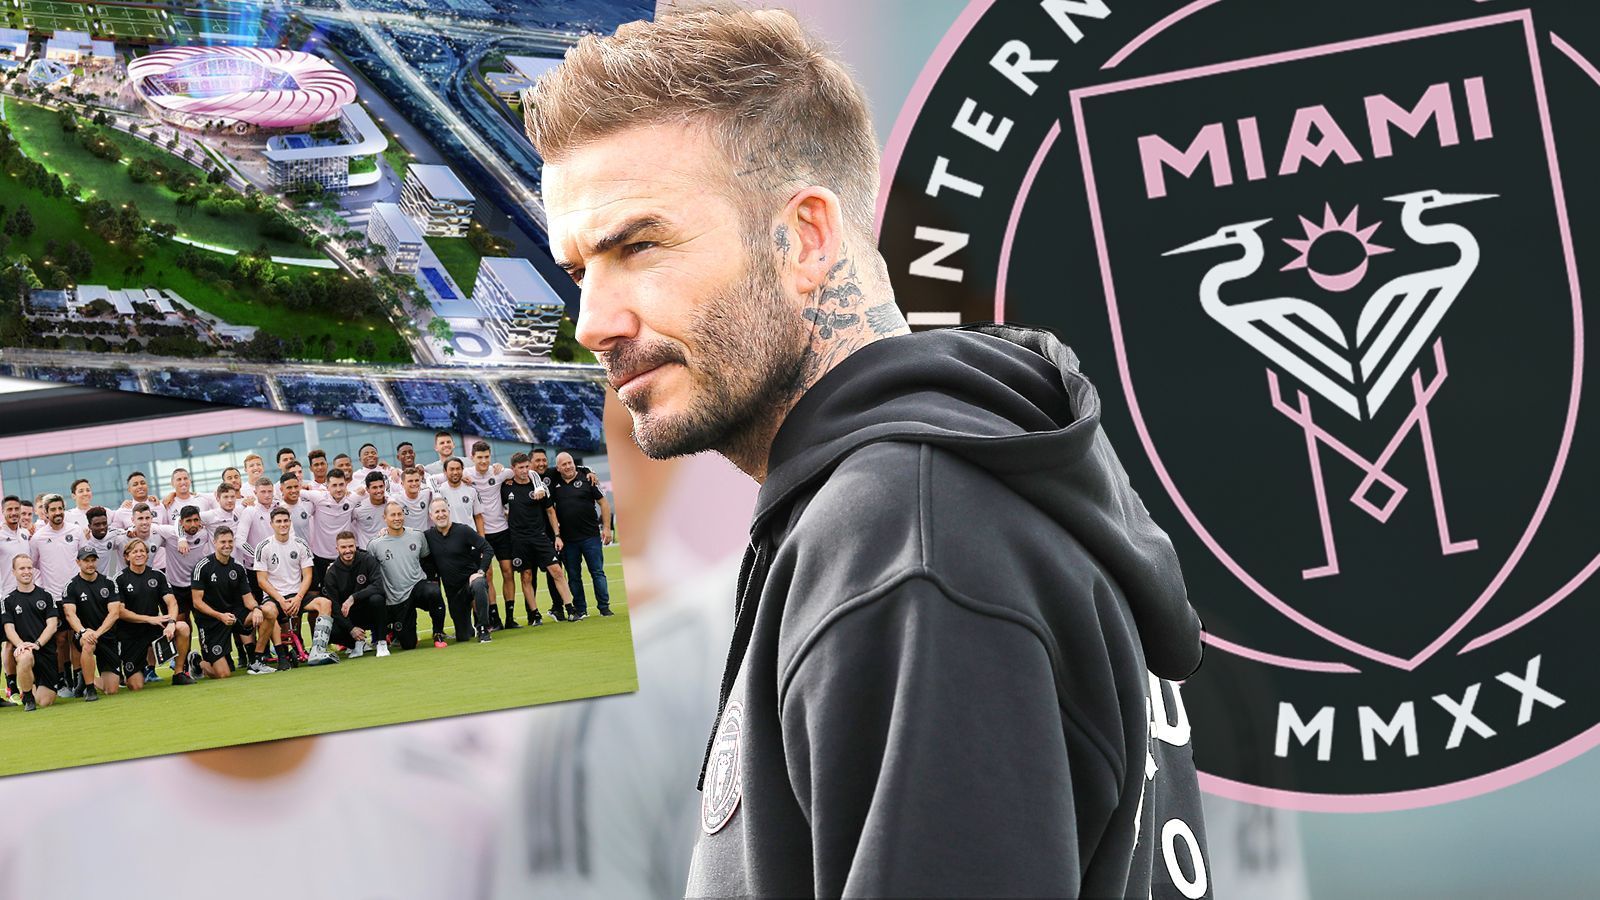 
                <strong>Inter Miami: Das ist der neue Klub von David Beckham</strong><br>
                Am Sonntag ist es soweit: David Beckhams Inter Miami startet mit dem Duell gegen den Los Angeles FC in seine erste MLS-Saison. ran.de stellt den neuen Stern am US-Fußballhimmel vor.
              